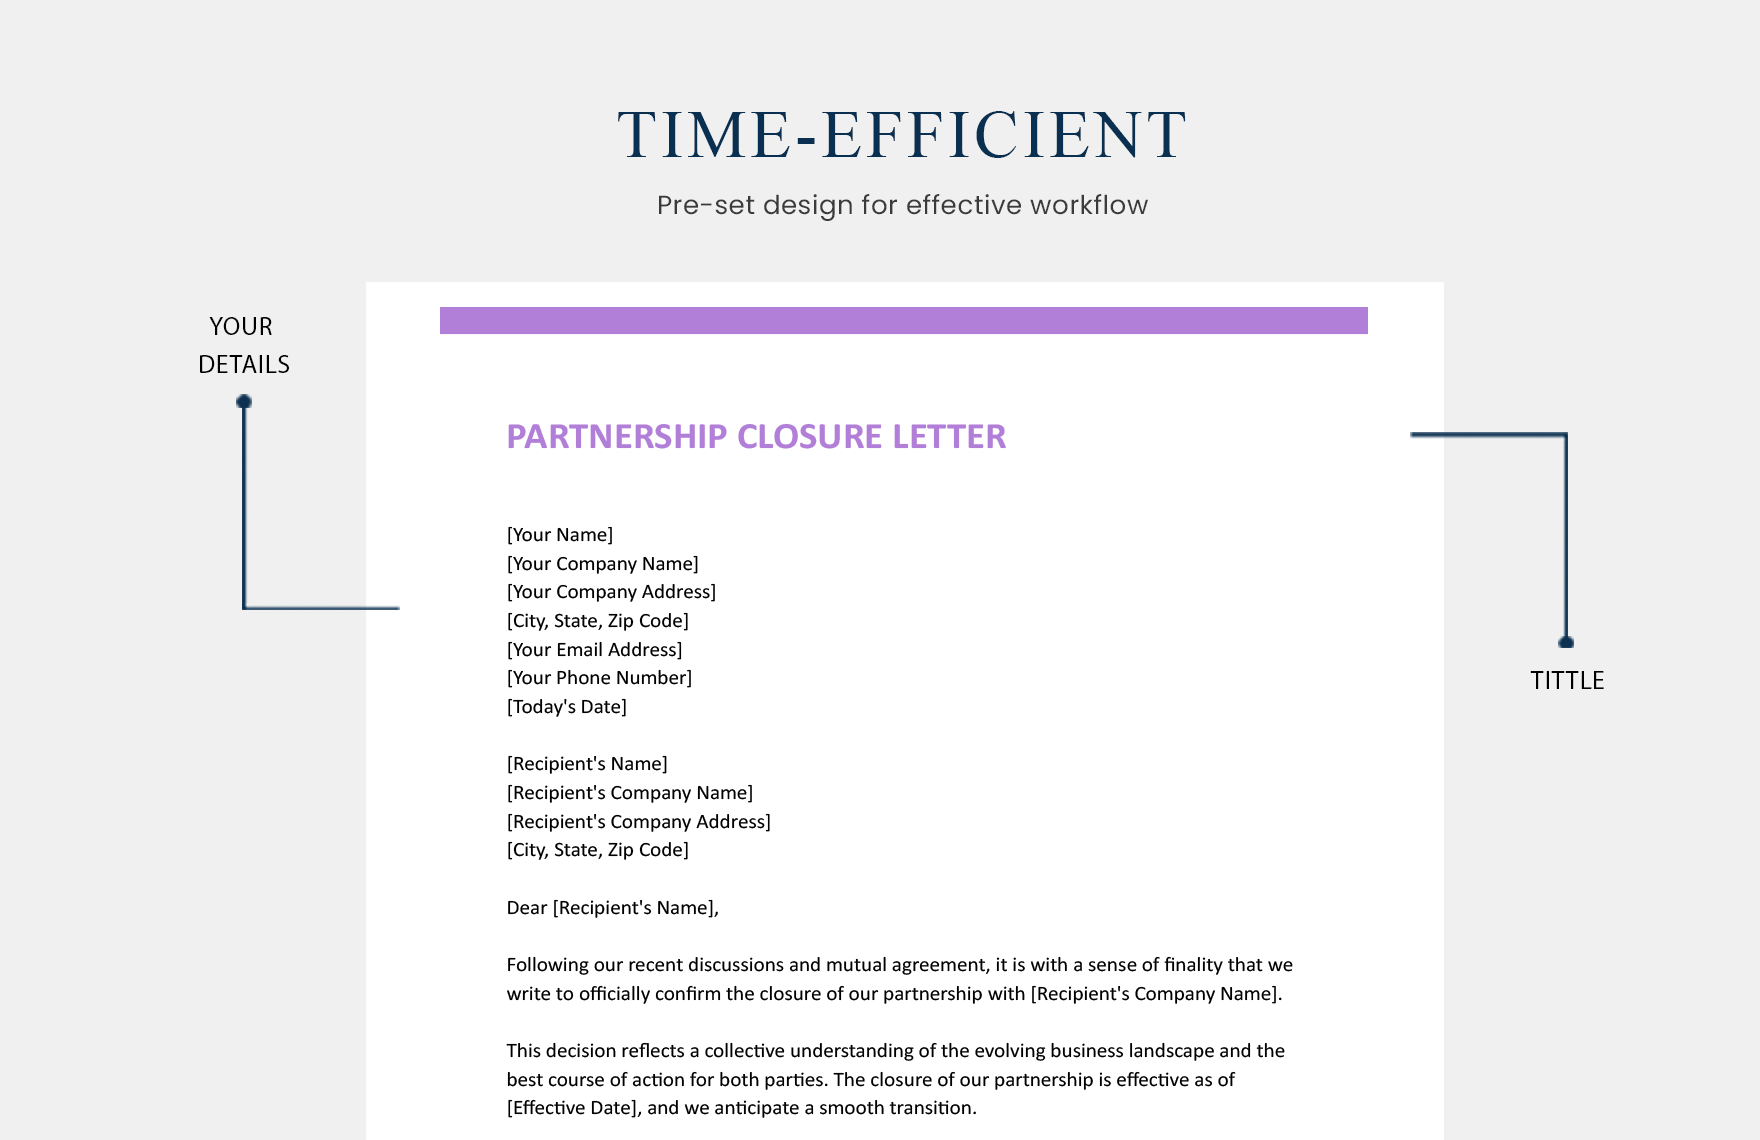 Partnership Closure Letter